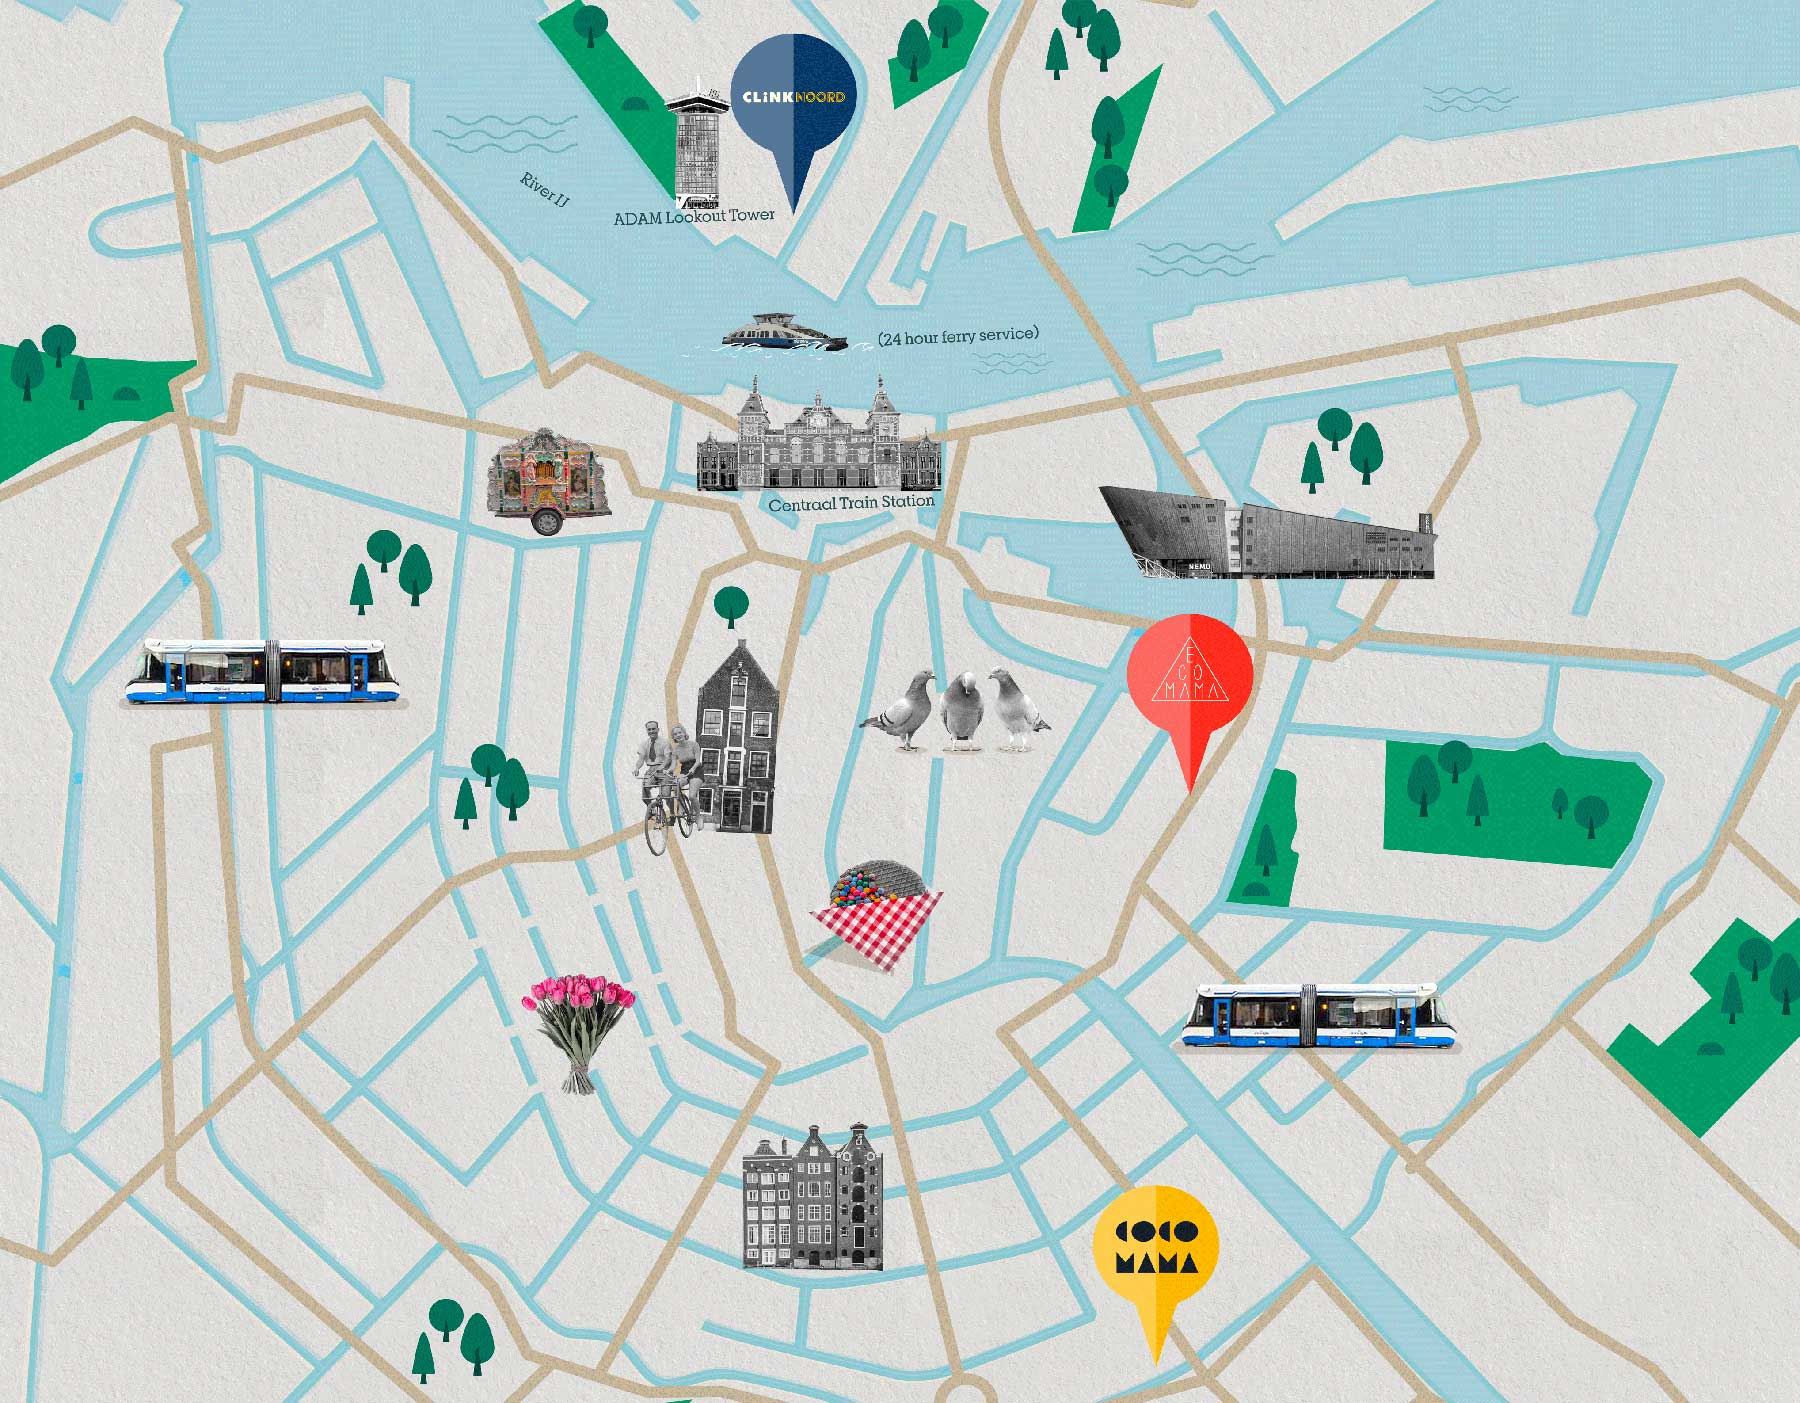 Mapa da cidade de Amesterdão com ClinkNOORD, Ecomama, Cocomama e atracções turísticas